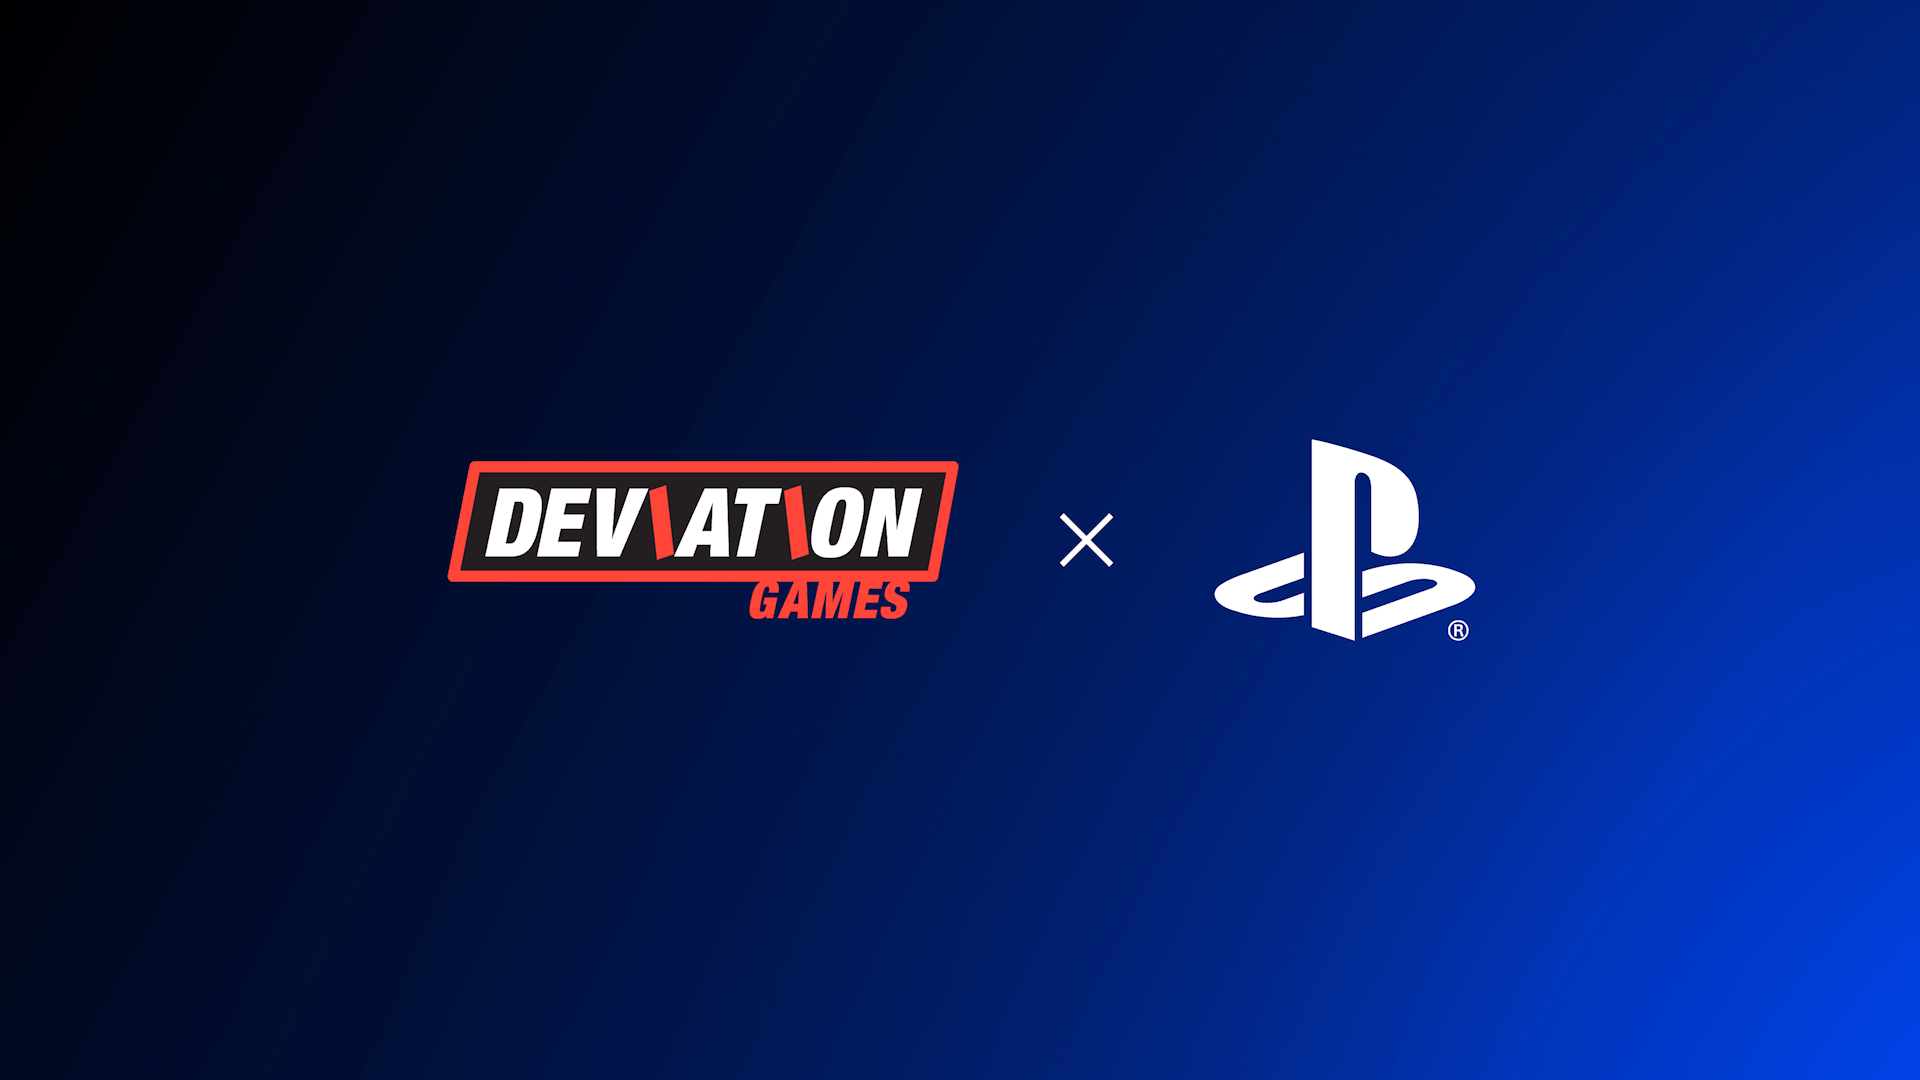 Deviation Games signe avec PlayStation pour développer une nouvelle franchise originale